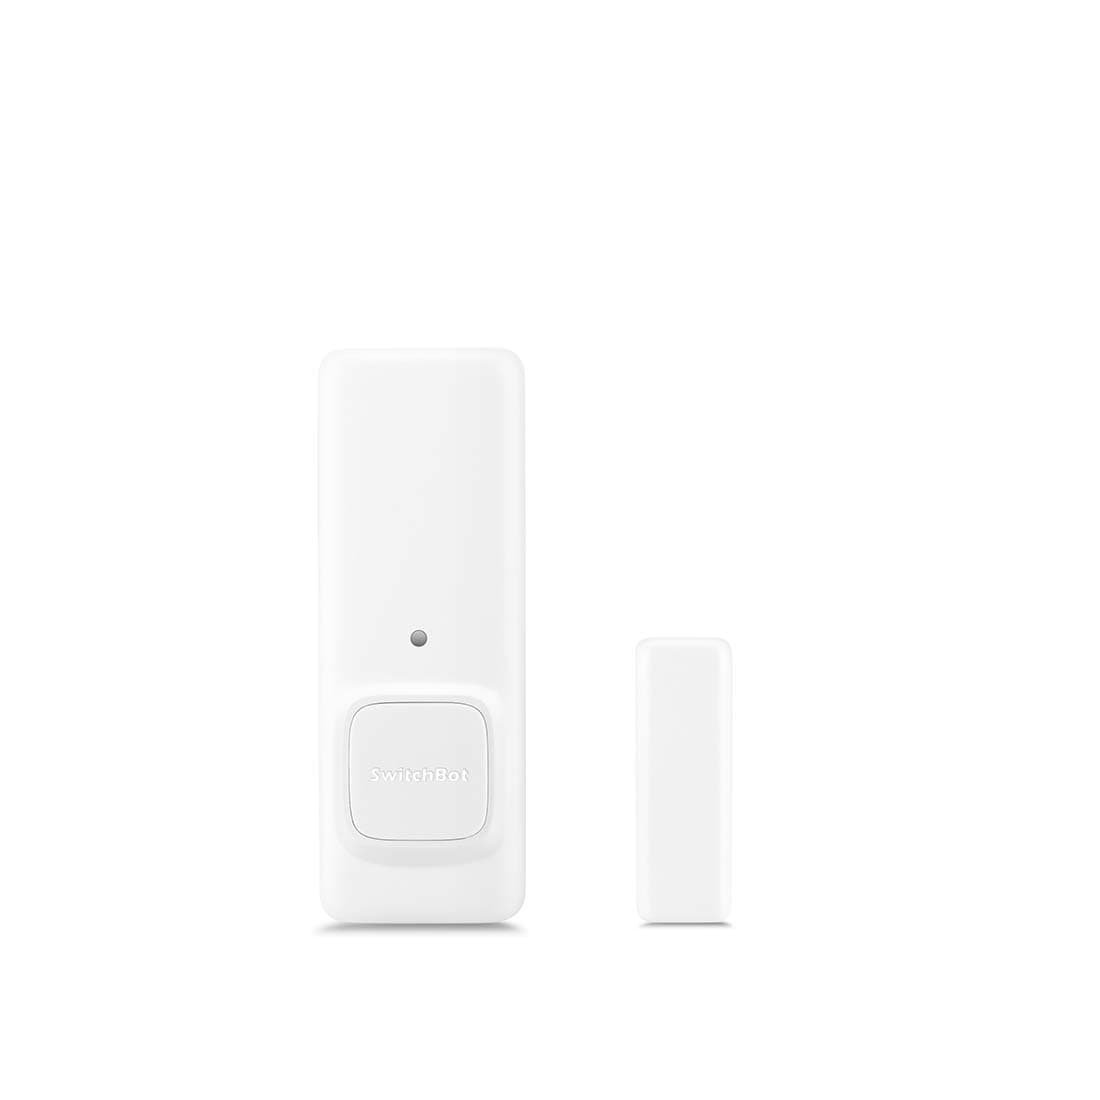 Billede af SwitchBot Contact Sensor - Dørsensor - Smart Home - Bluetooth - Batteri